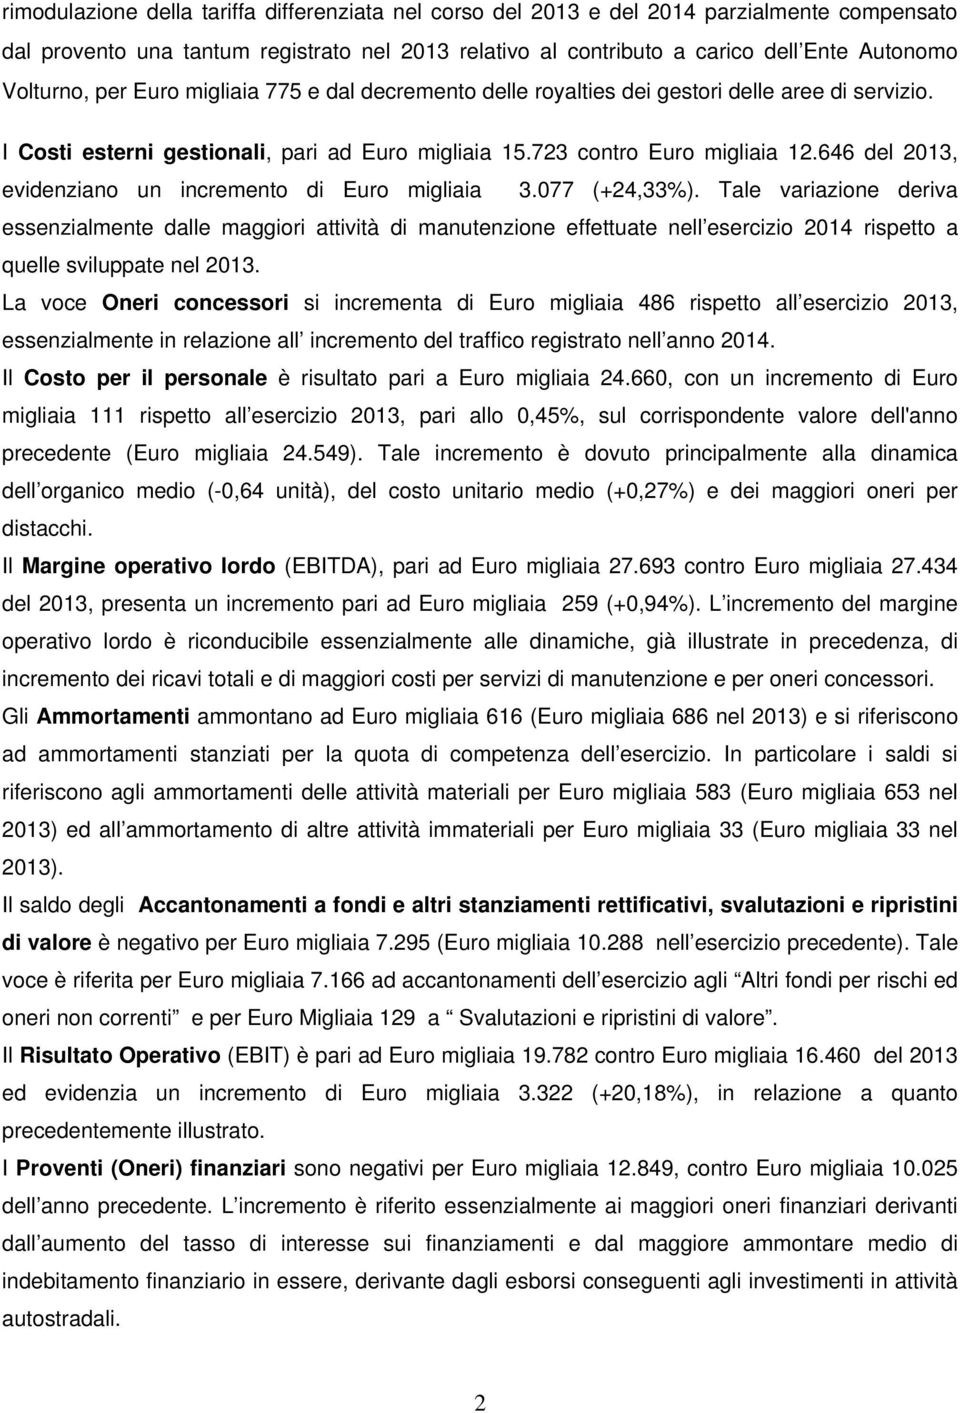 646 del 2013, evidenziano un incremento di Euro migliaia 3.077 (+24,33%).